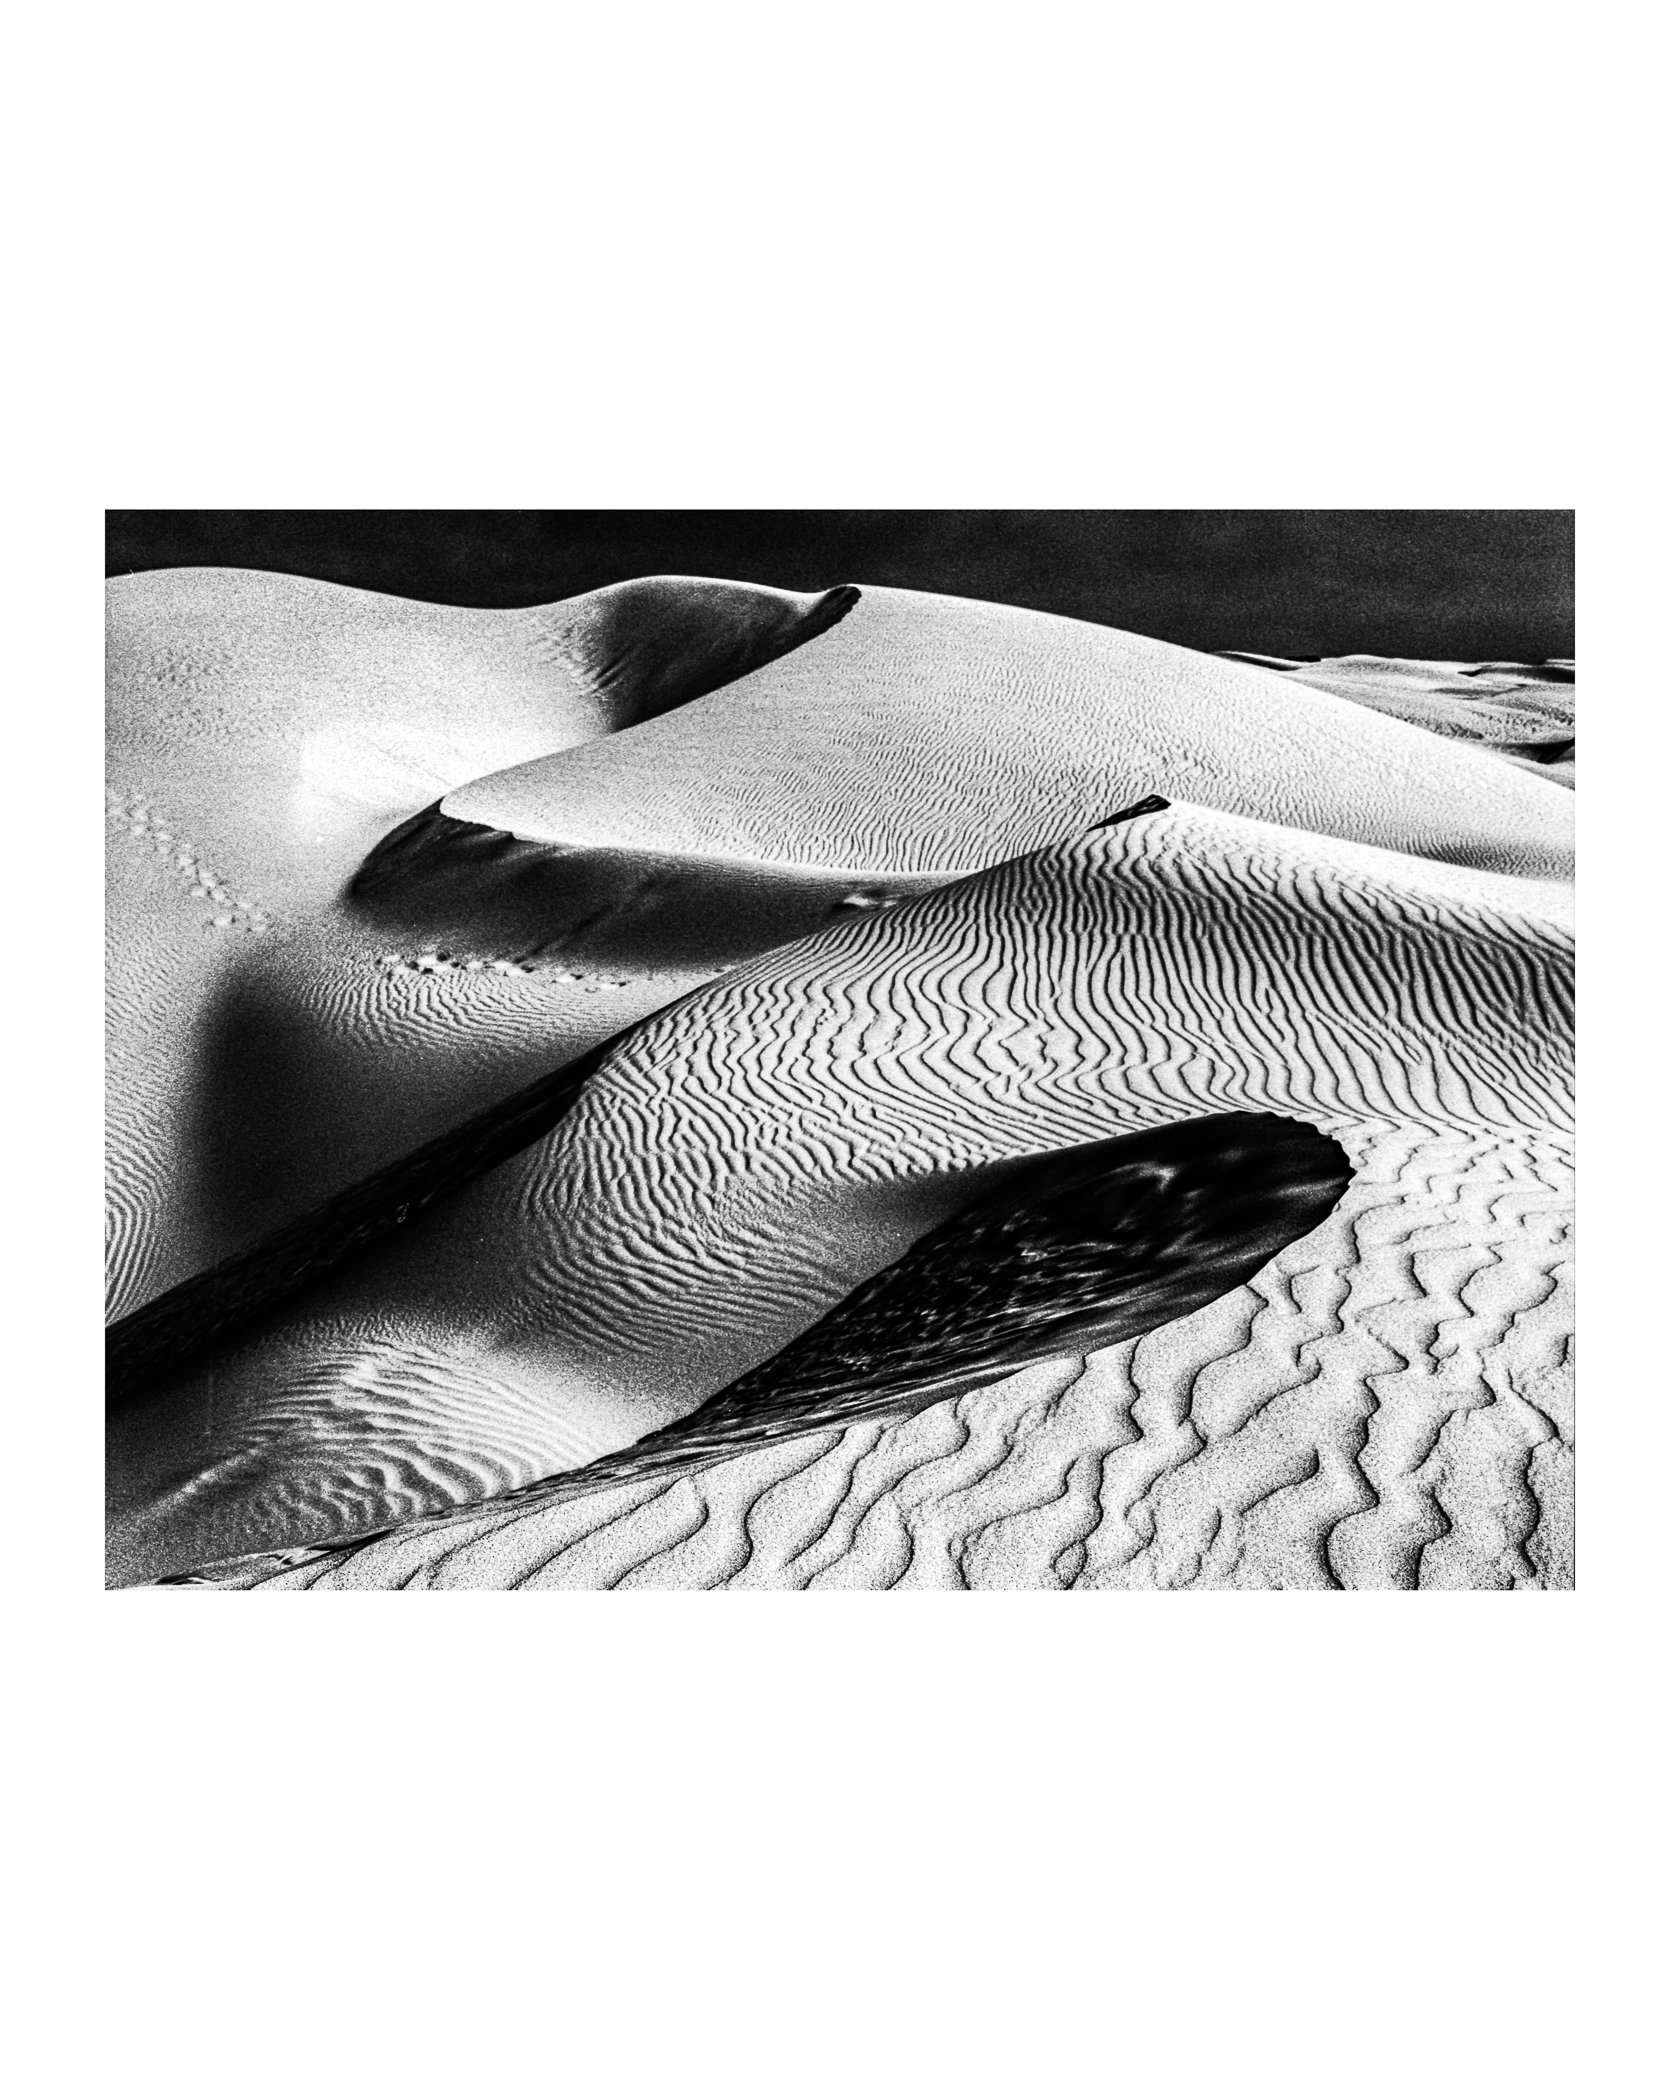 The Dunes 01